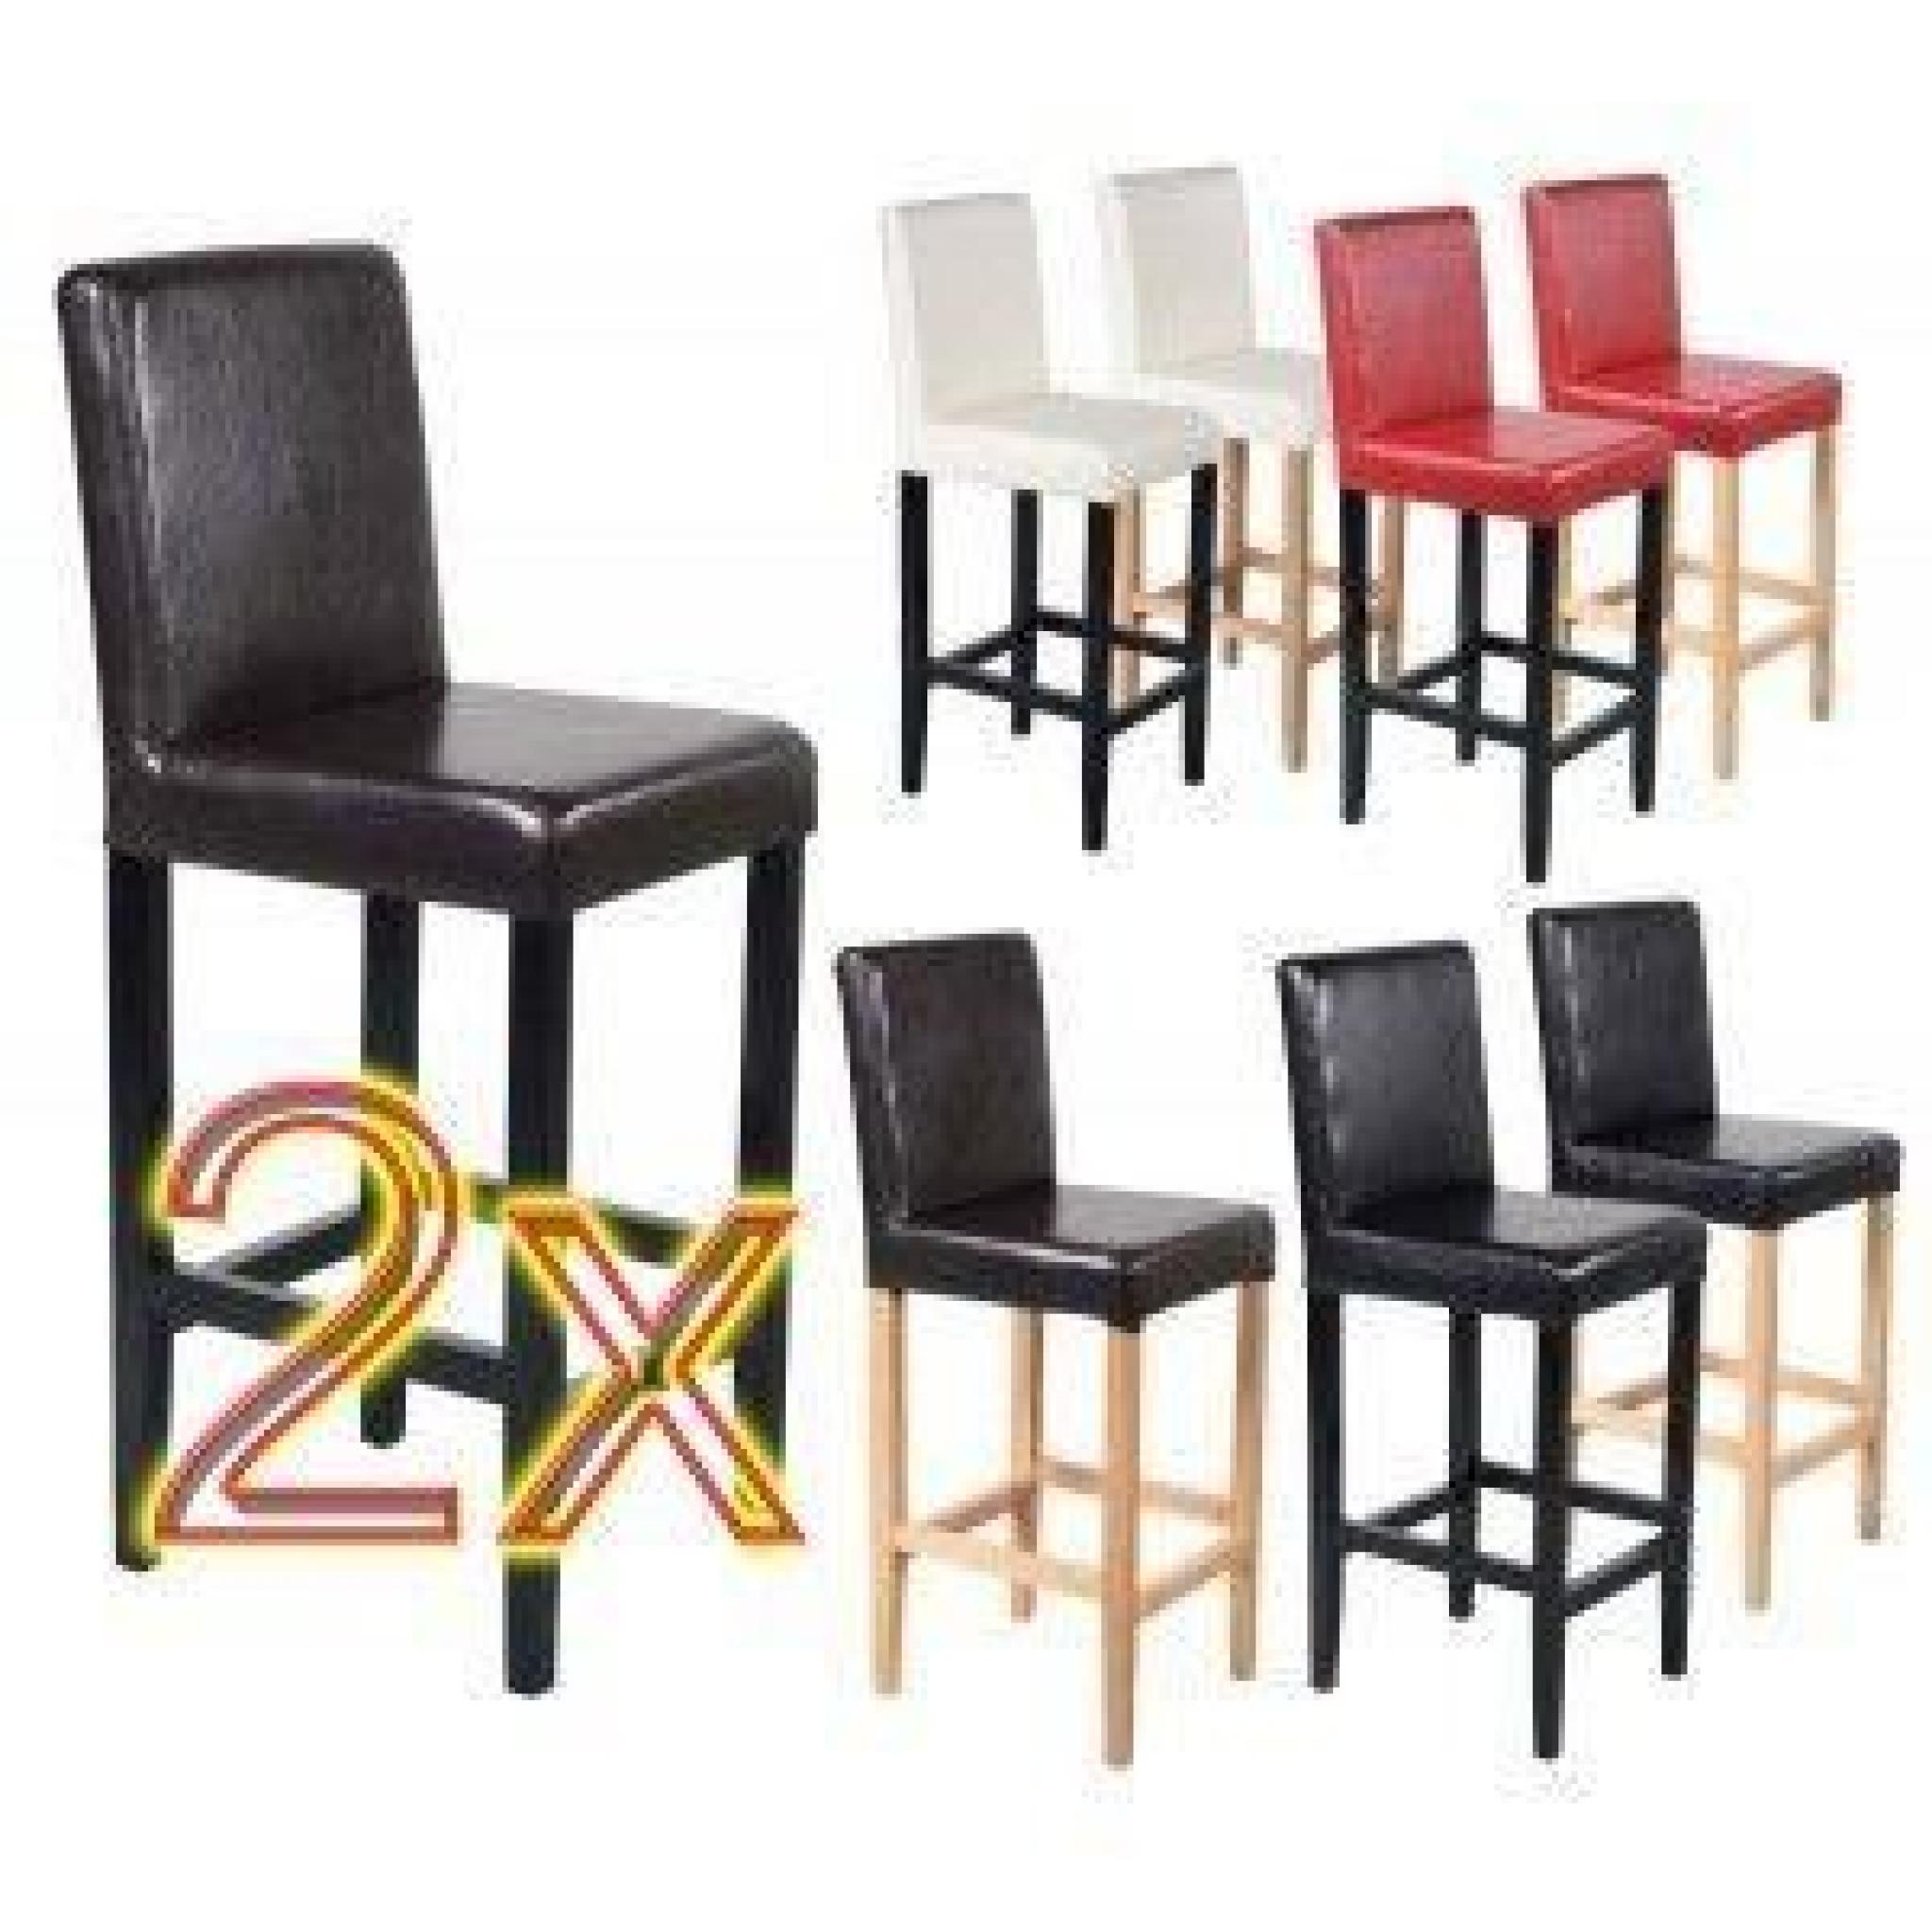 2 tabourets / chaises de bar Vicenza cuir